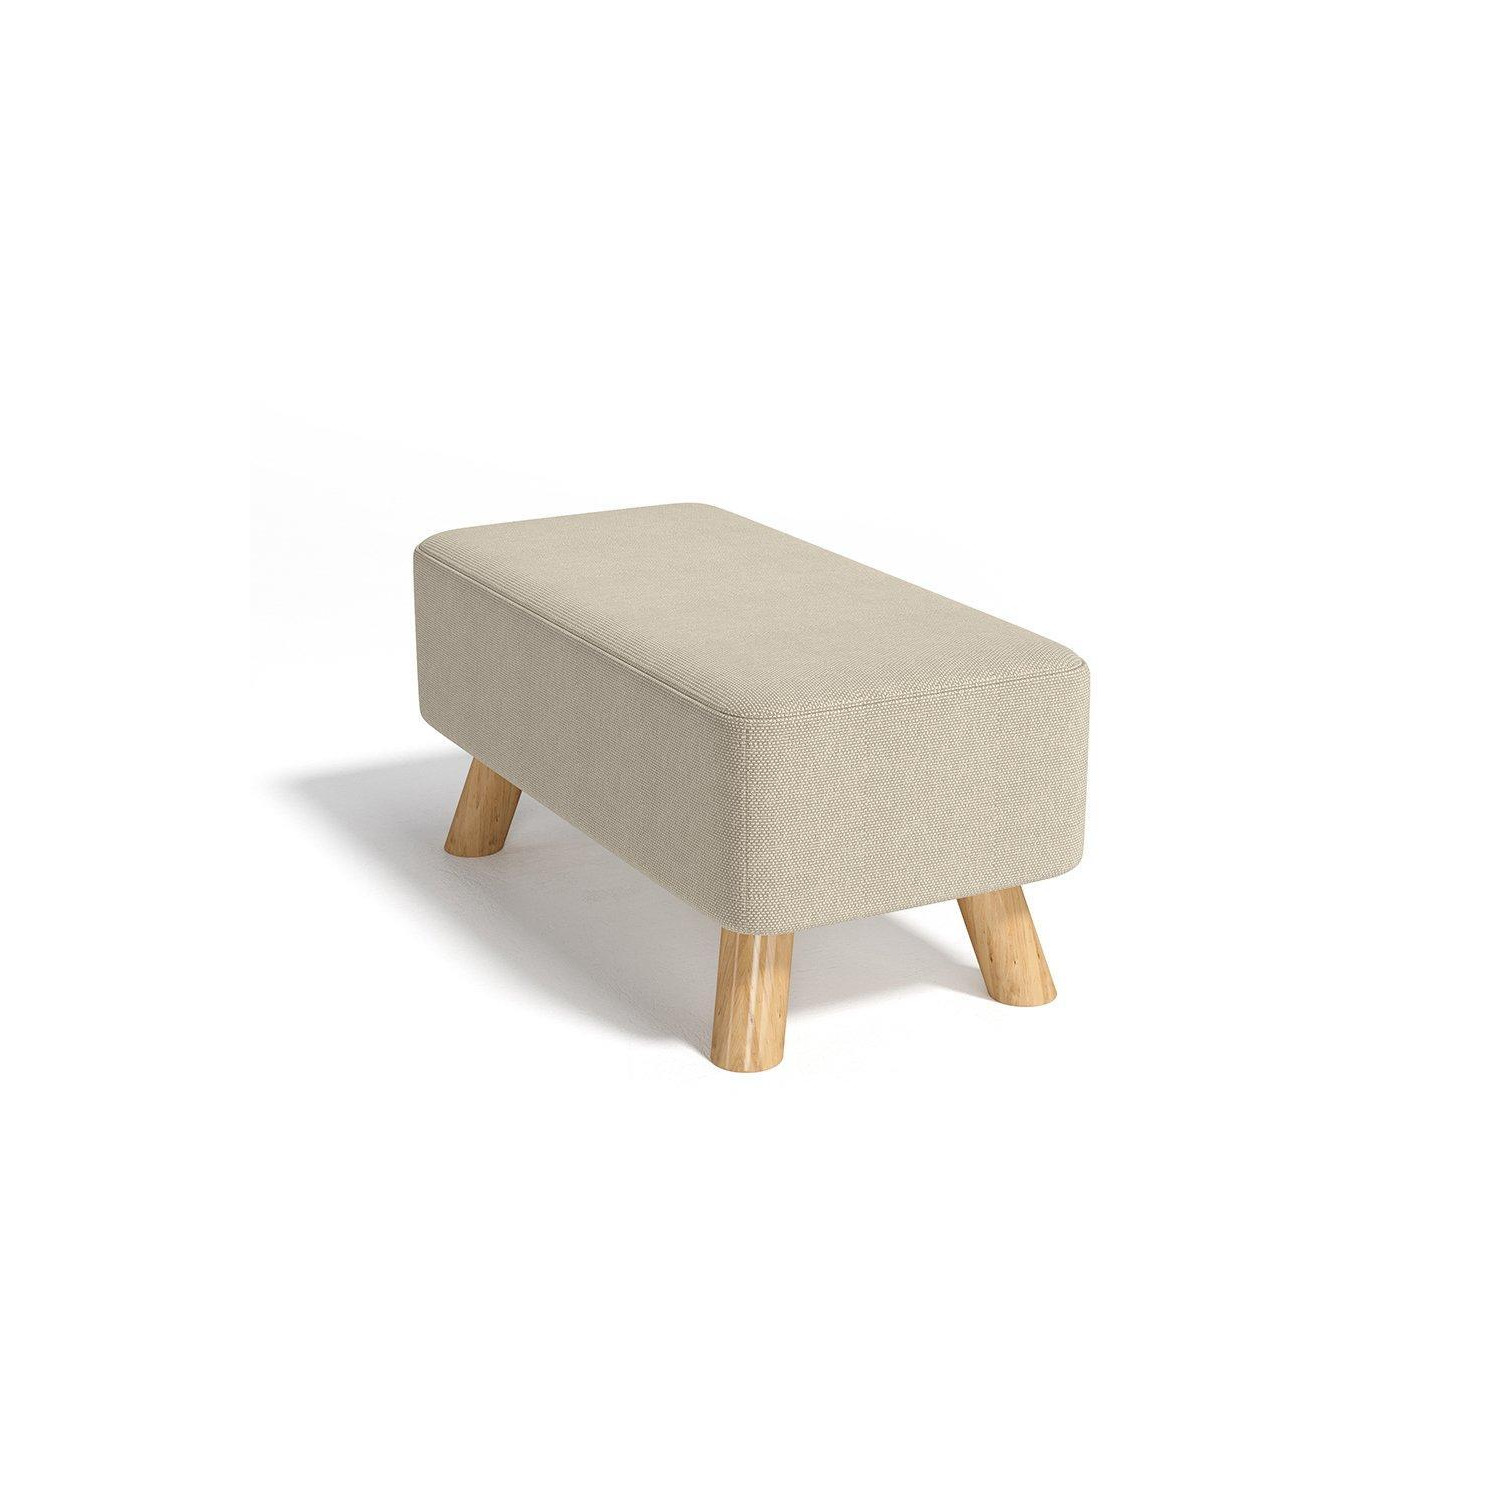 Rectangular Tofu-shaped Footstool - image 1